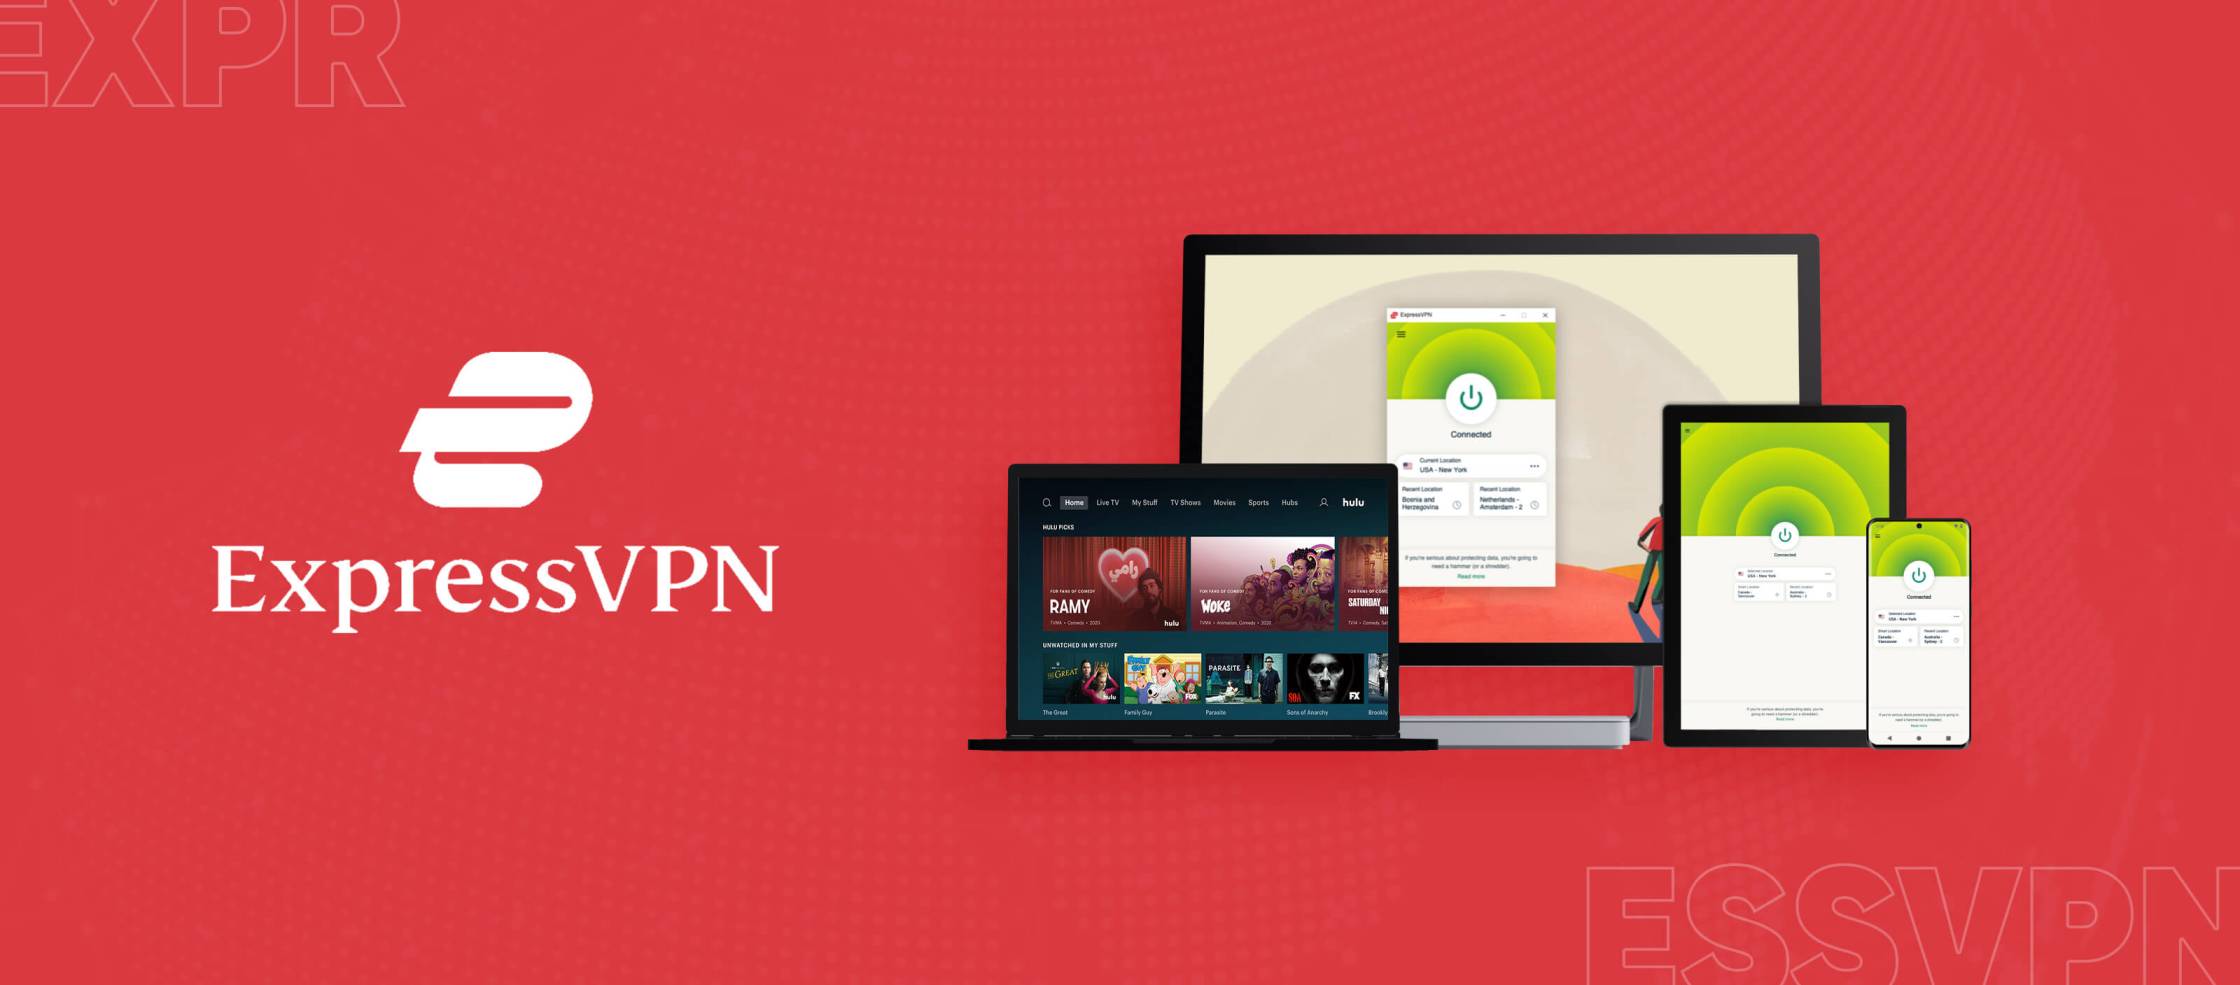  ExpressVPN-Hulu es una combinación de dos servicios populares: ExpressVPN y Hulu. ExpressVPN es un proveedor de servicios de red privada virtual (VPN) que permite a los usuarios navegar por Internet de forma segura y anónima. Hulu, por otro lado, es un servicio de streaming de video que ofrece una amplia variedad de programas de televisión y películas. Juntos, ExpressVPN-Hulu ofrece a los usuarios la posibilidad de acceder a 